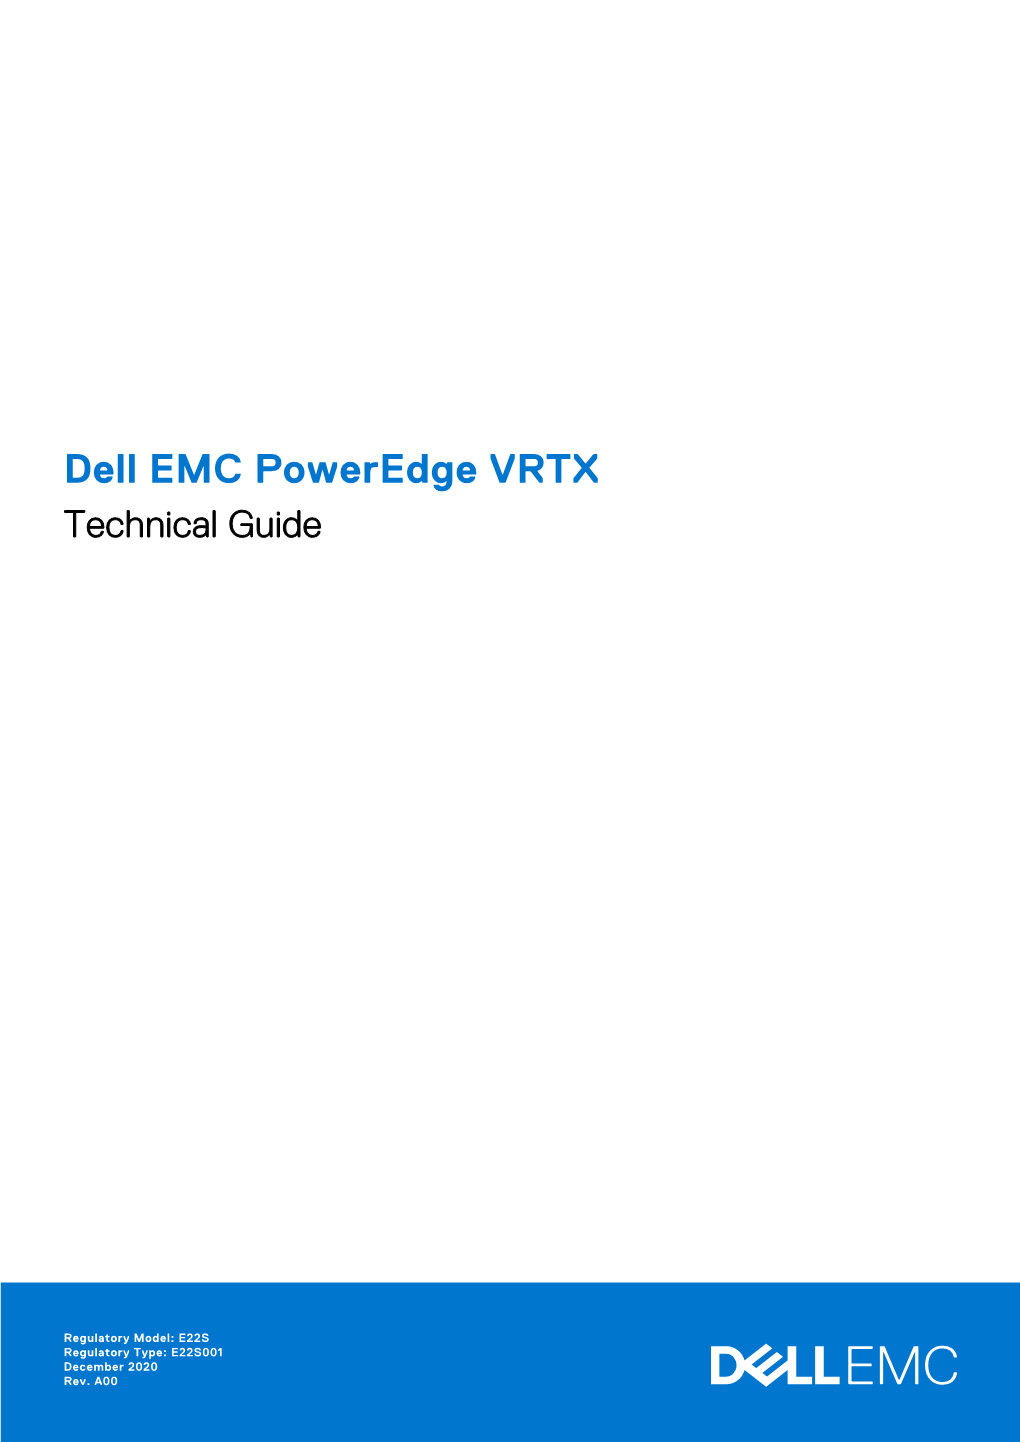 Dell EMC Poweredge VRTX Technical Guide